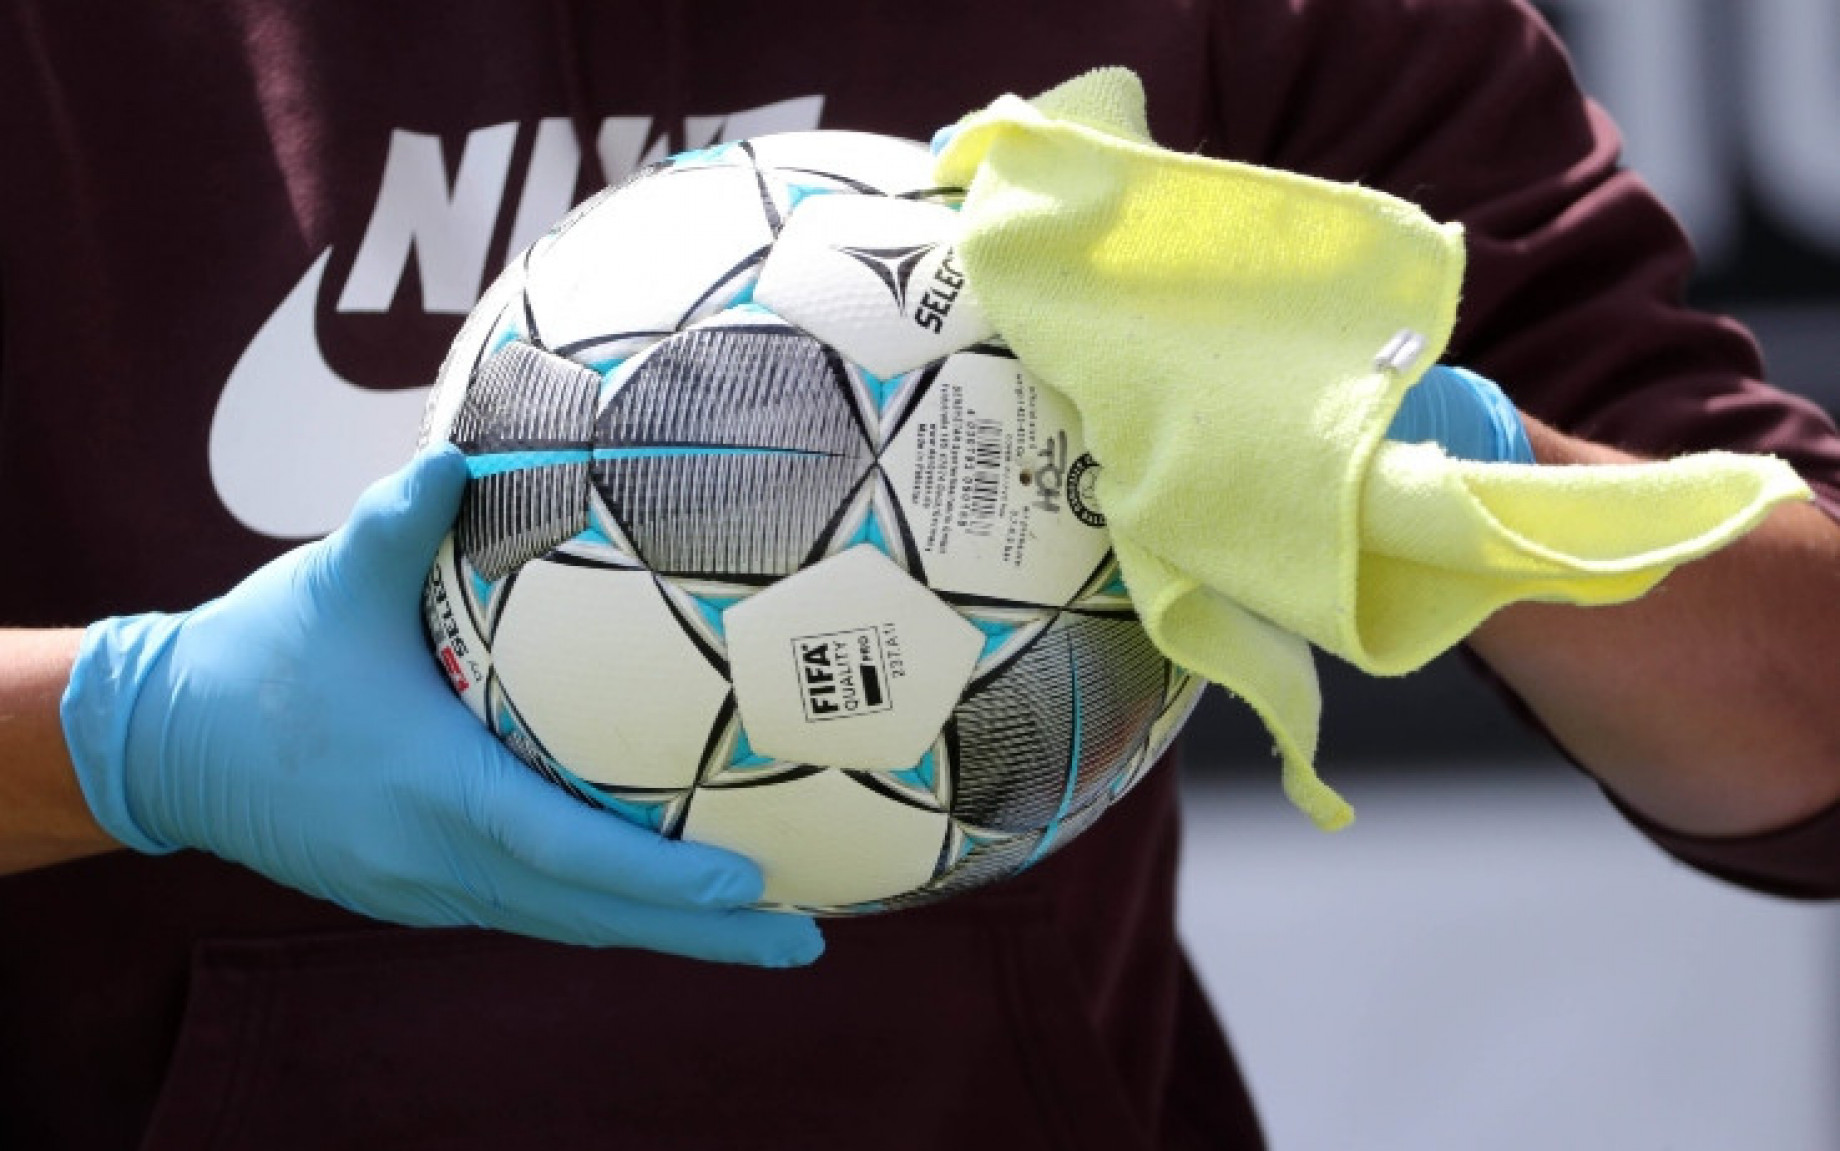 Pallone disinfettato calcio IMAGE.jpg